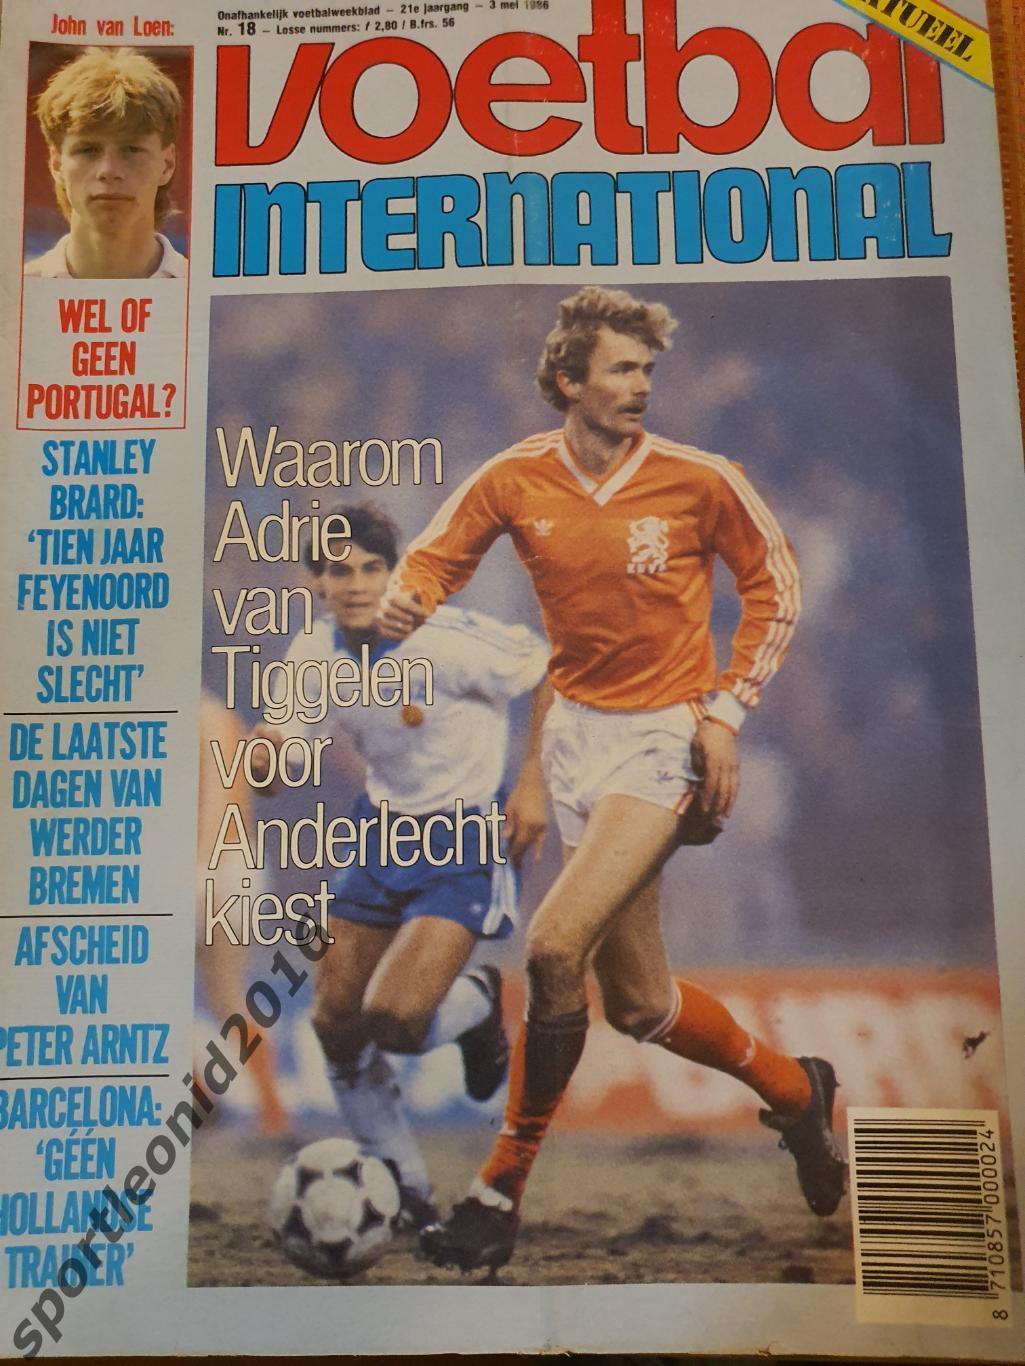 Voetbal International 1986.14 топ выпусков.В том числе итоговые к ЧМ-86.4 4